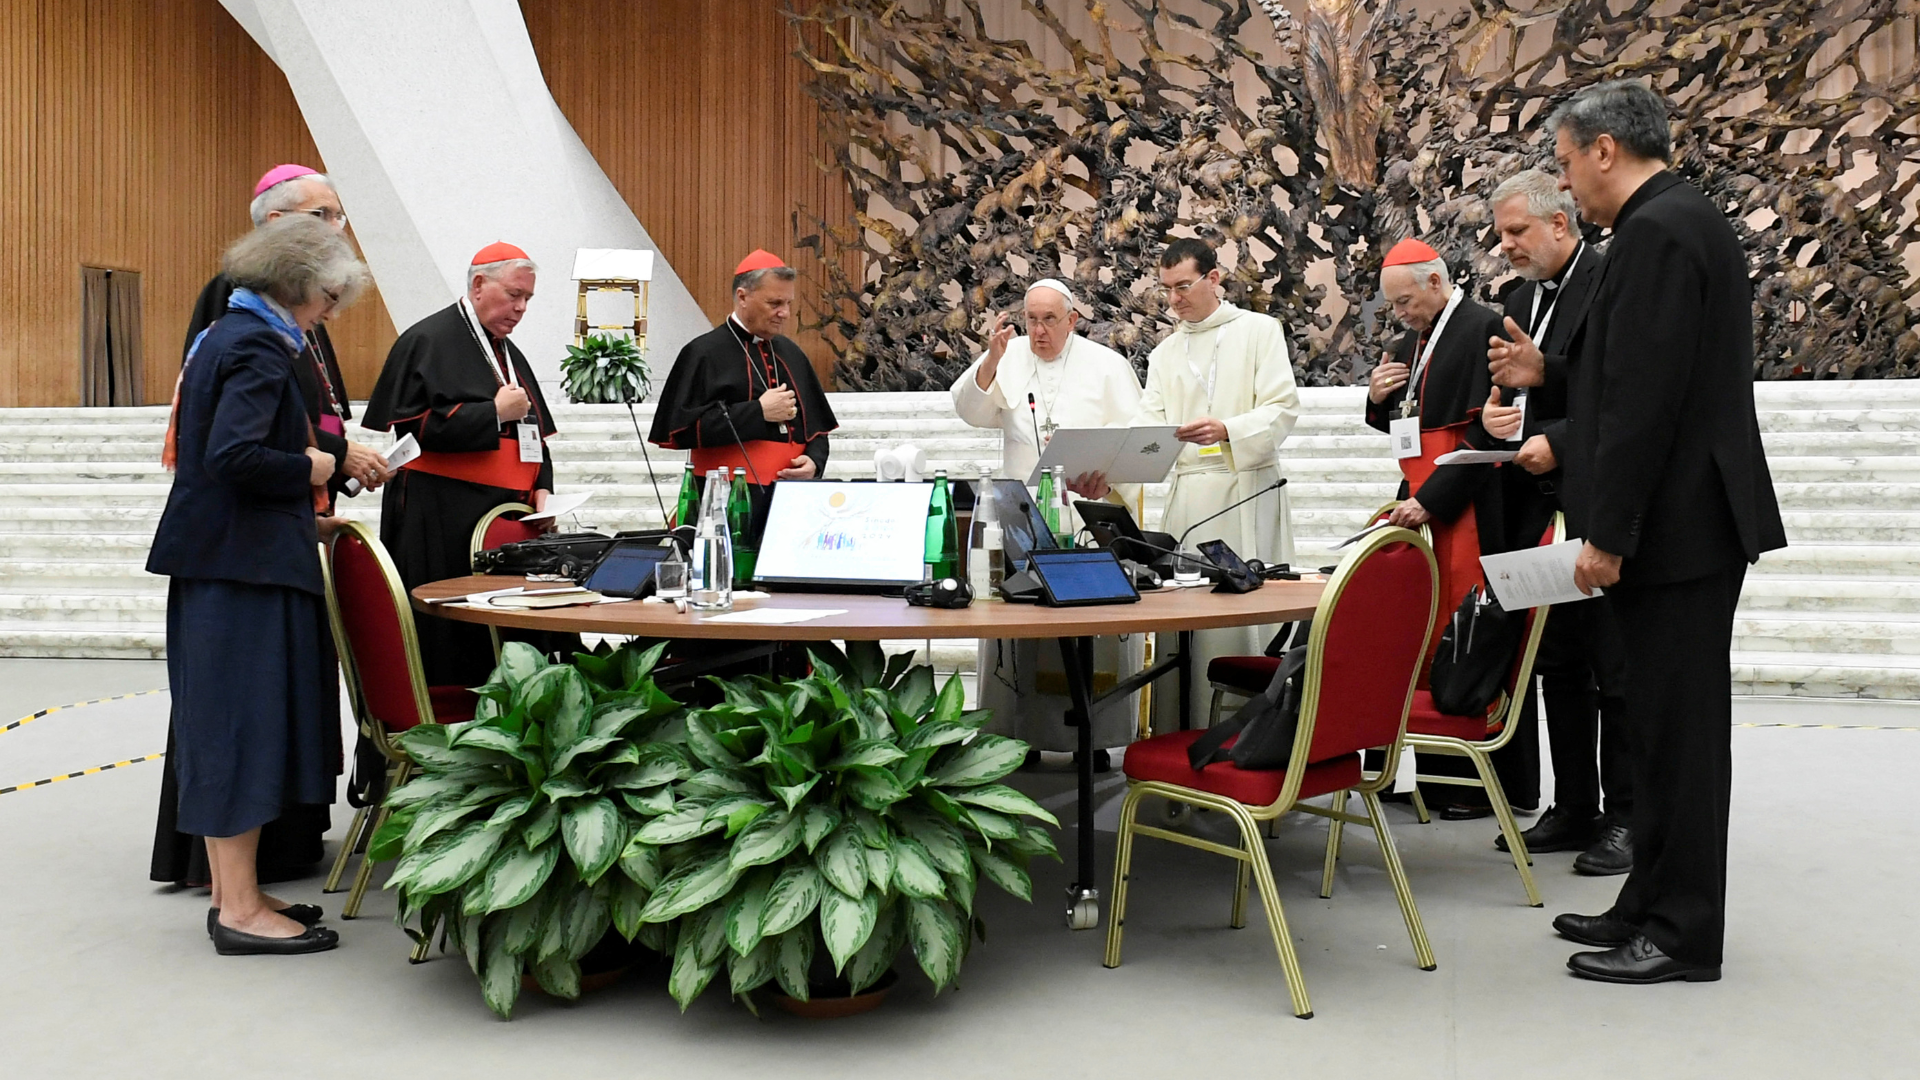 Papa Francisco agradece por orações pelo Sínodo